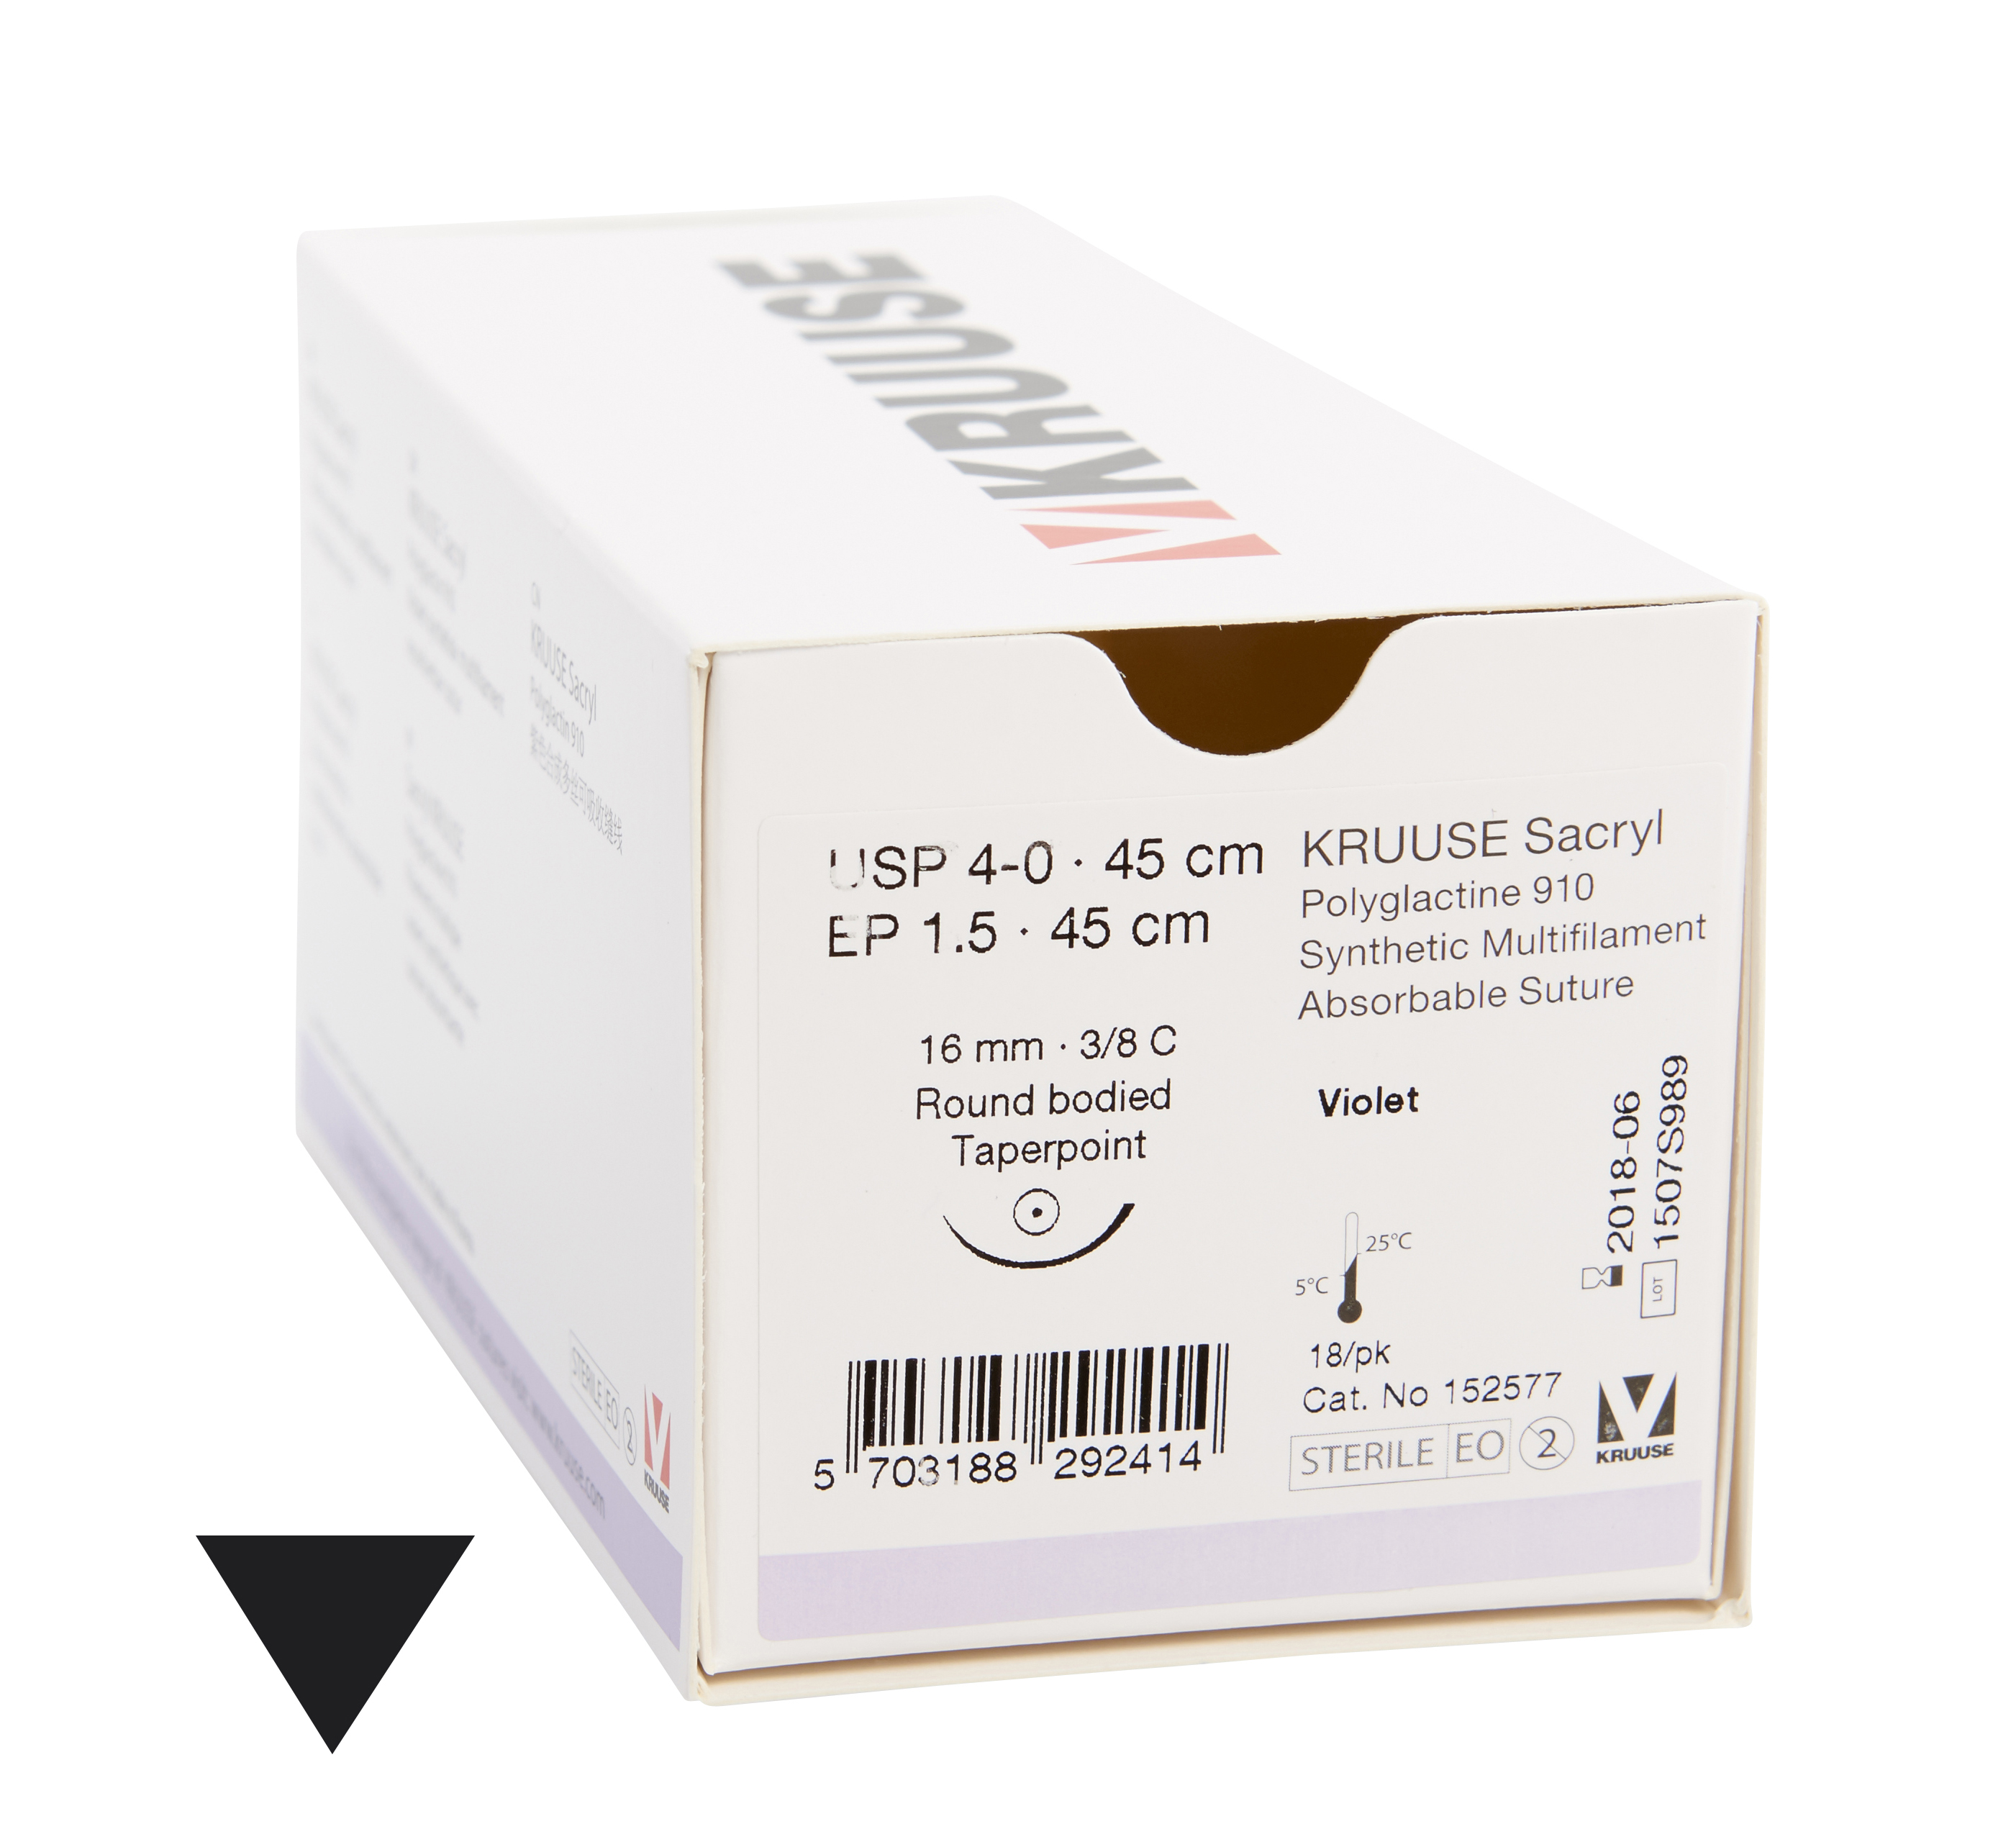 KRUUSE Sacryl suture, USP 4-0, 45 cm, violet, 16 mm needle, 3/8C, taperpoint, 18/pk